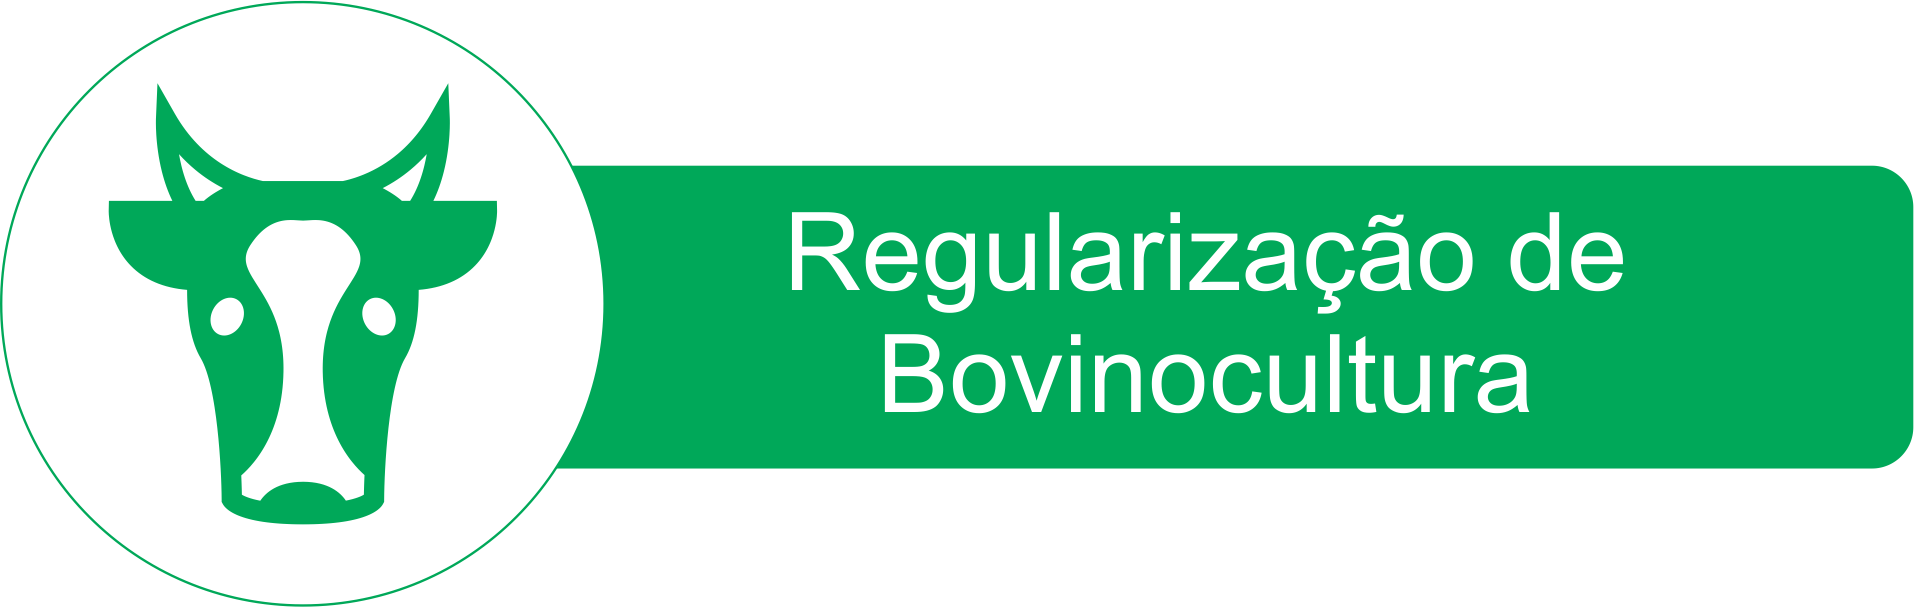 Regularização de Bovinocultura